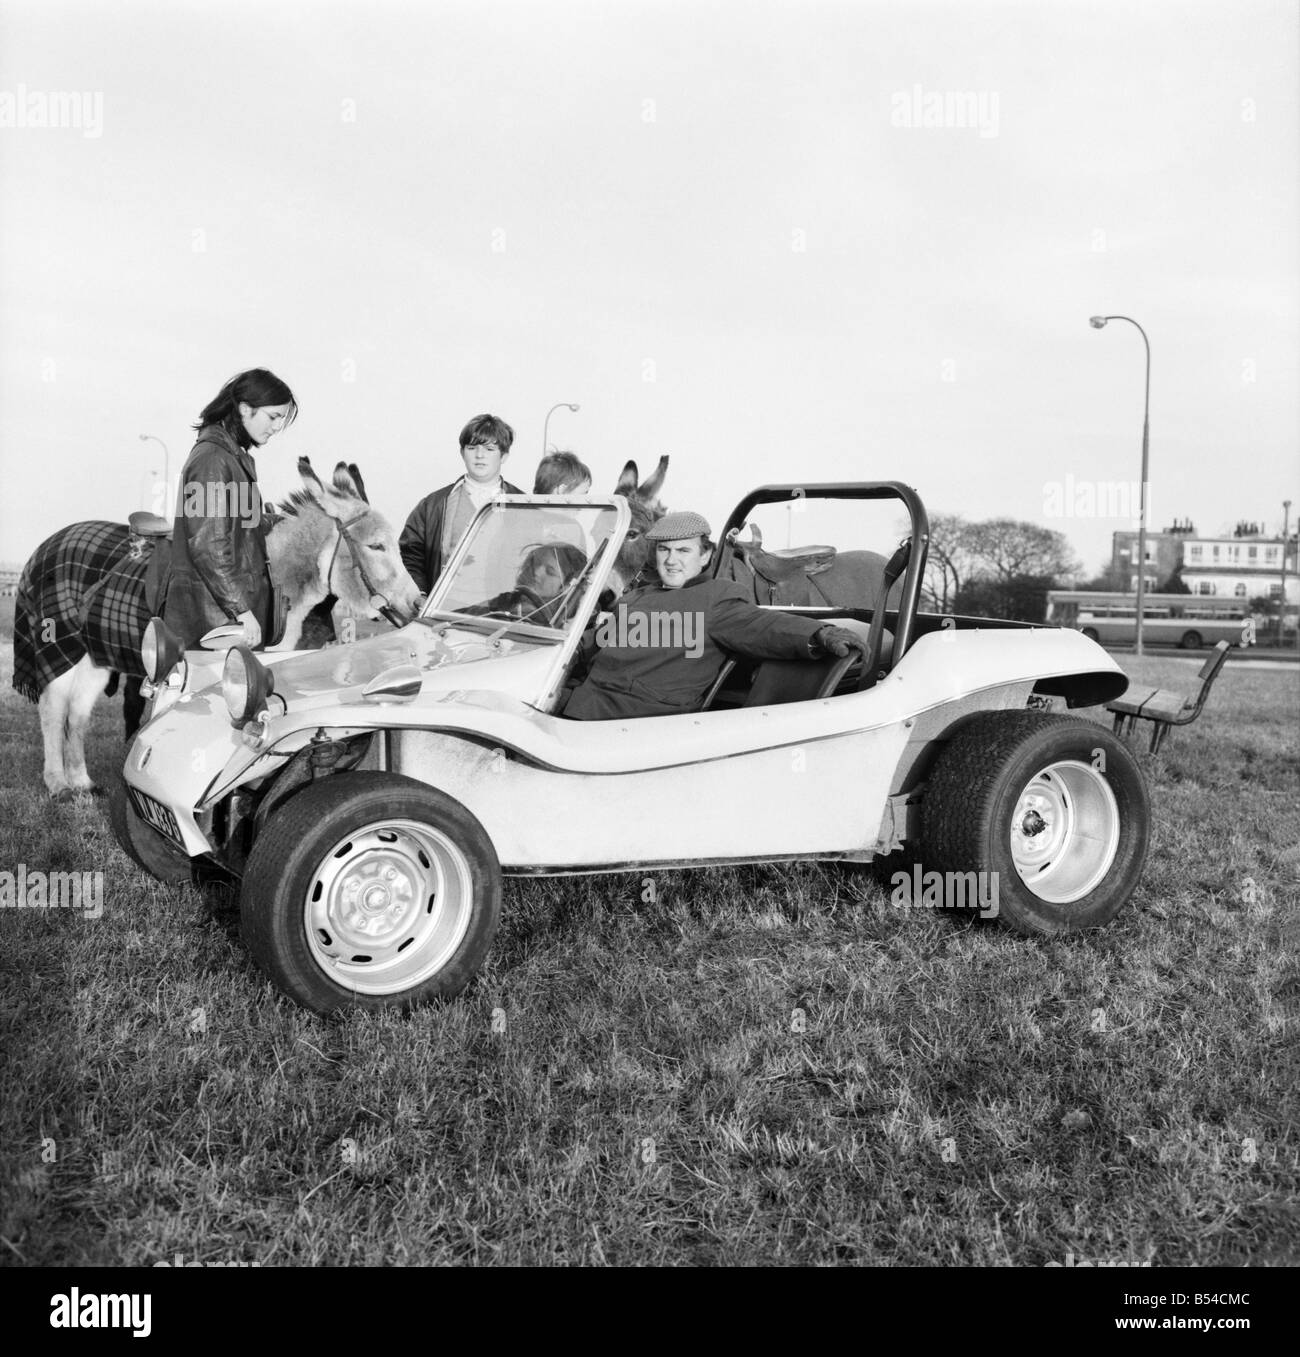 Zu transportieren. Kraftfahrzeuge. Der neue GP Bugle Buggy, ein offener Roadster mit einem harten Fiberglas Körper, ein 1200cc Volkswagen Motor angetrieben. November 1969 Z11225-001 Stockfoto